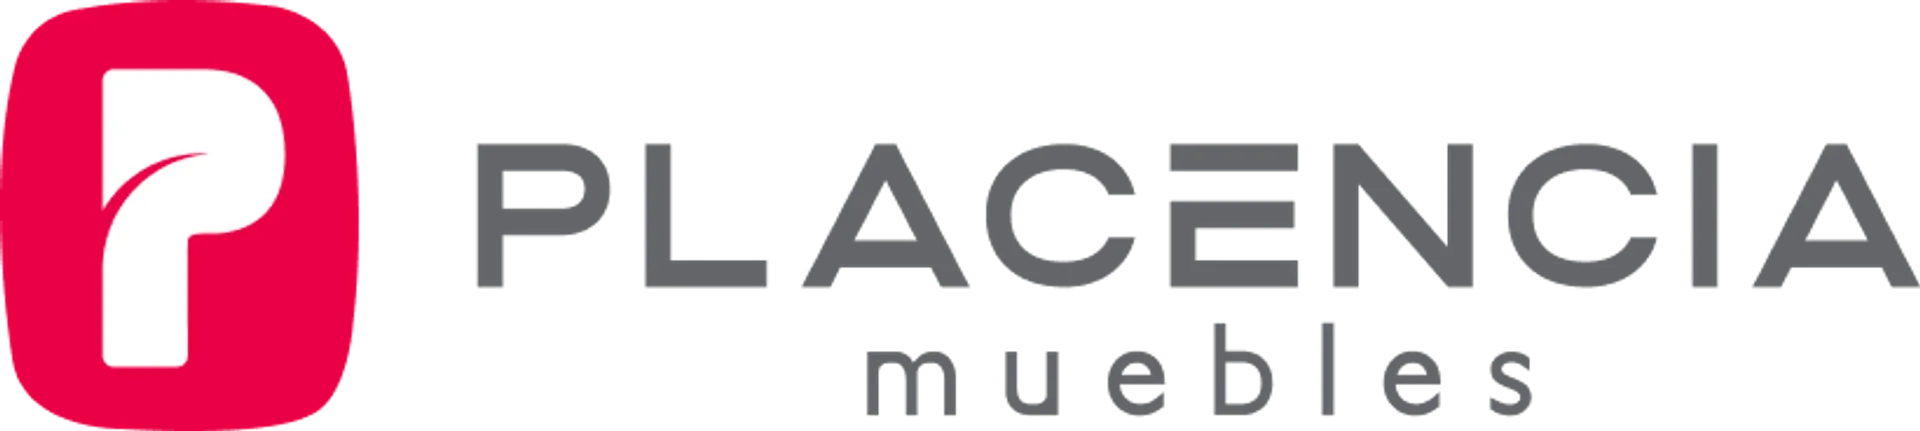 PLACENCIA MUEBLES logo de catálogo